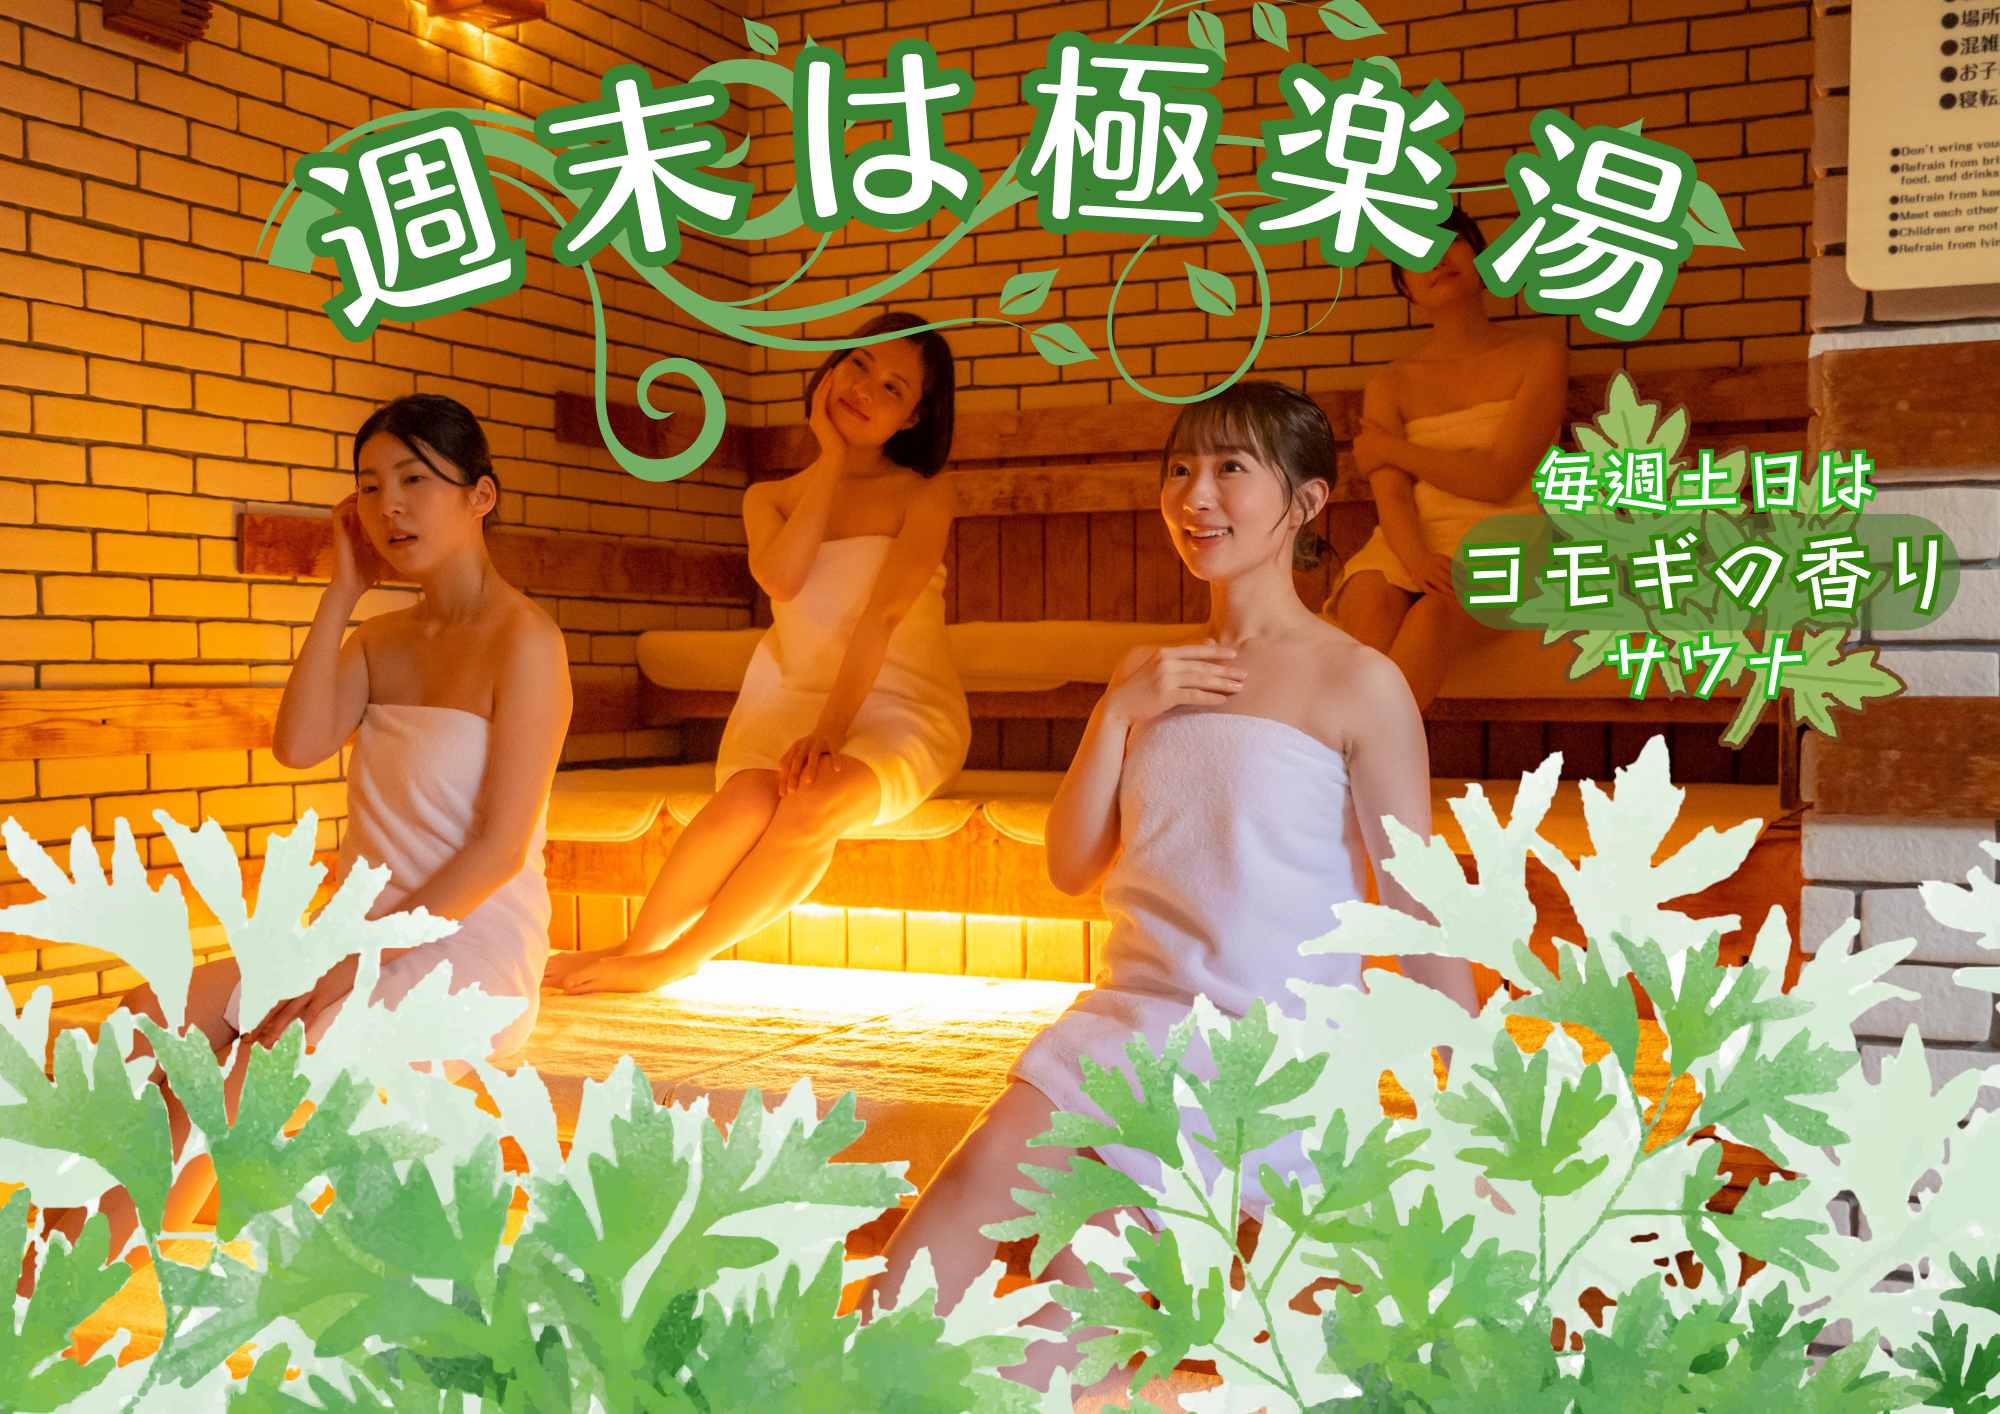 イベント | 店舗数日本一の風呂屋 | 極楽湯